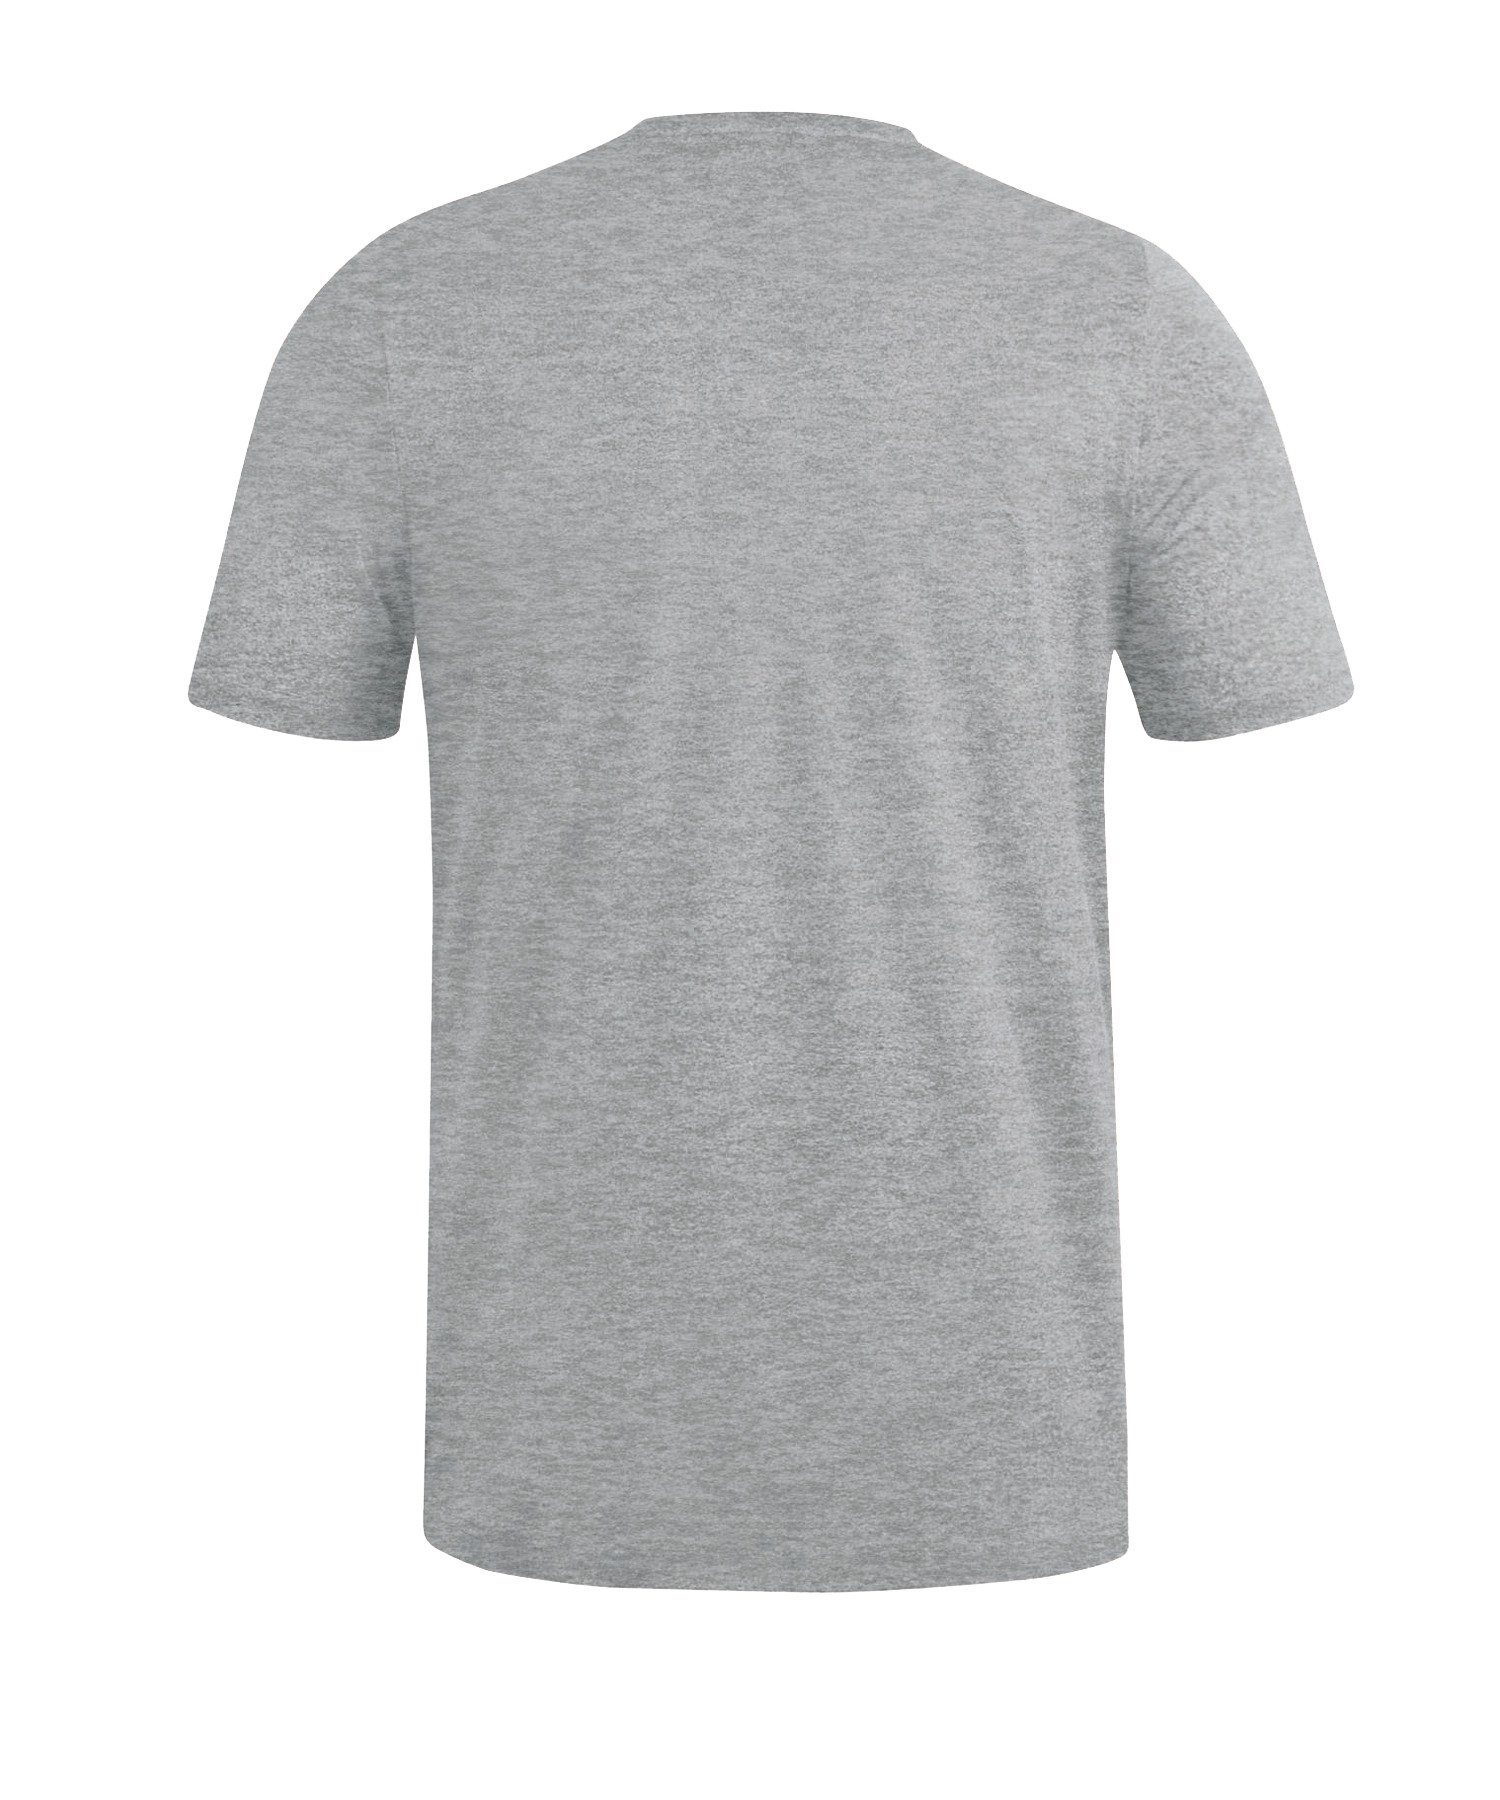 Jako T-Shirt Premium Basic default T-Shirt grau